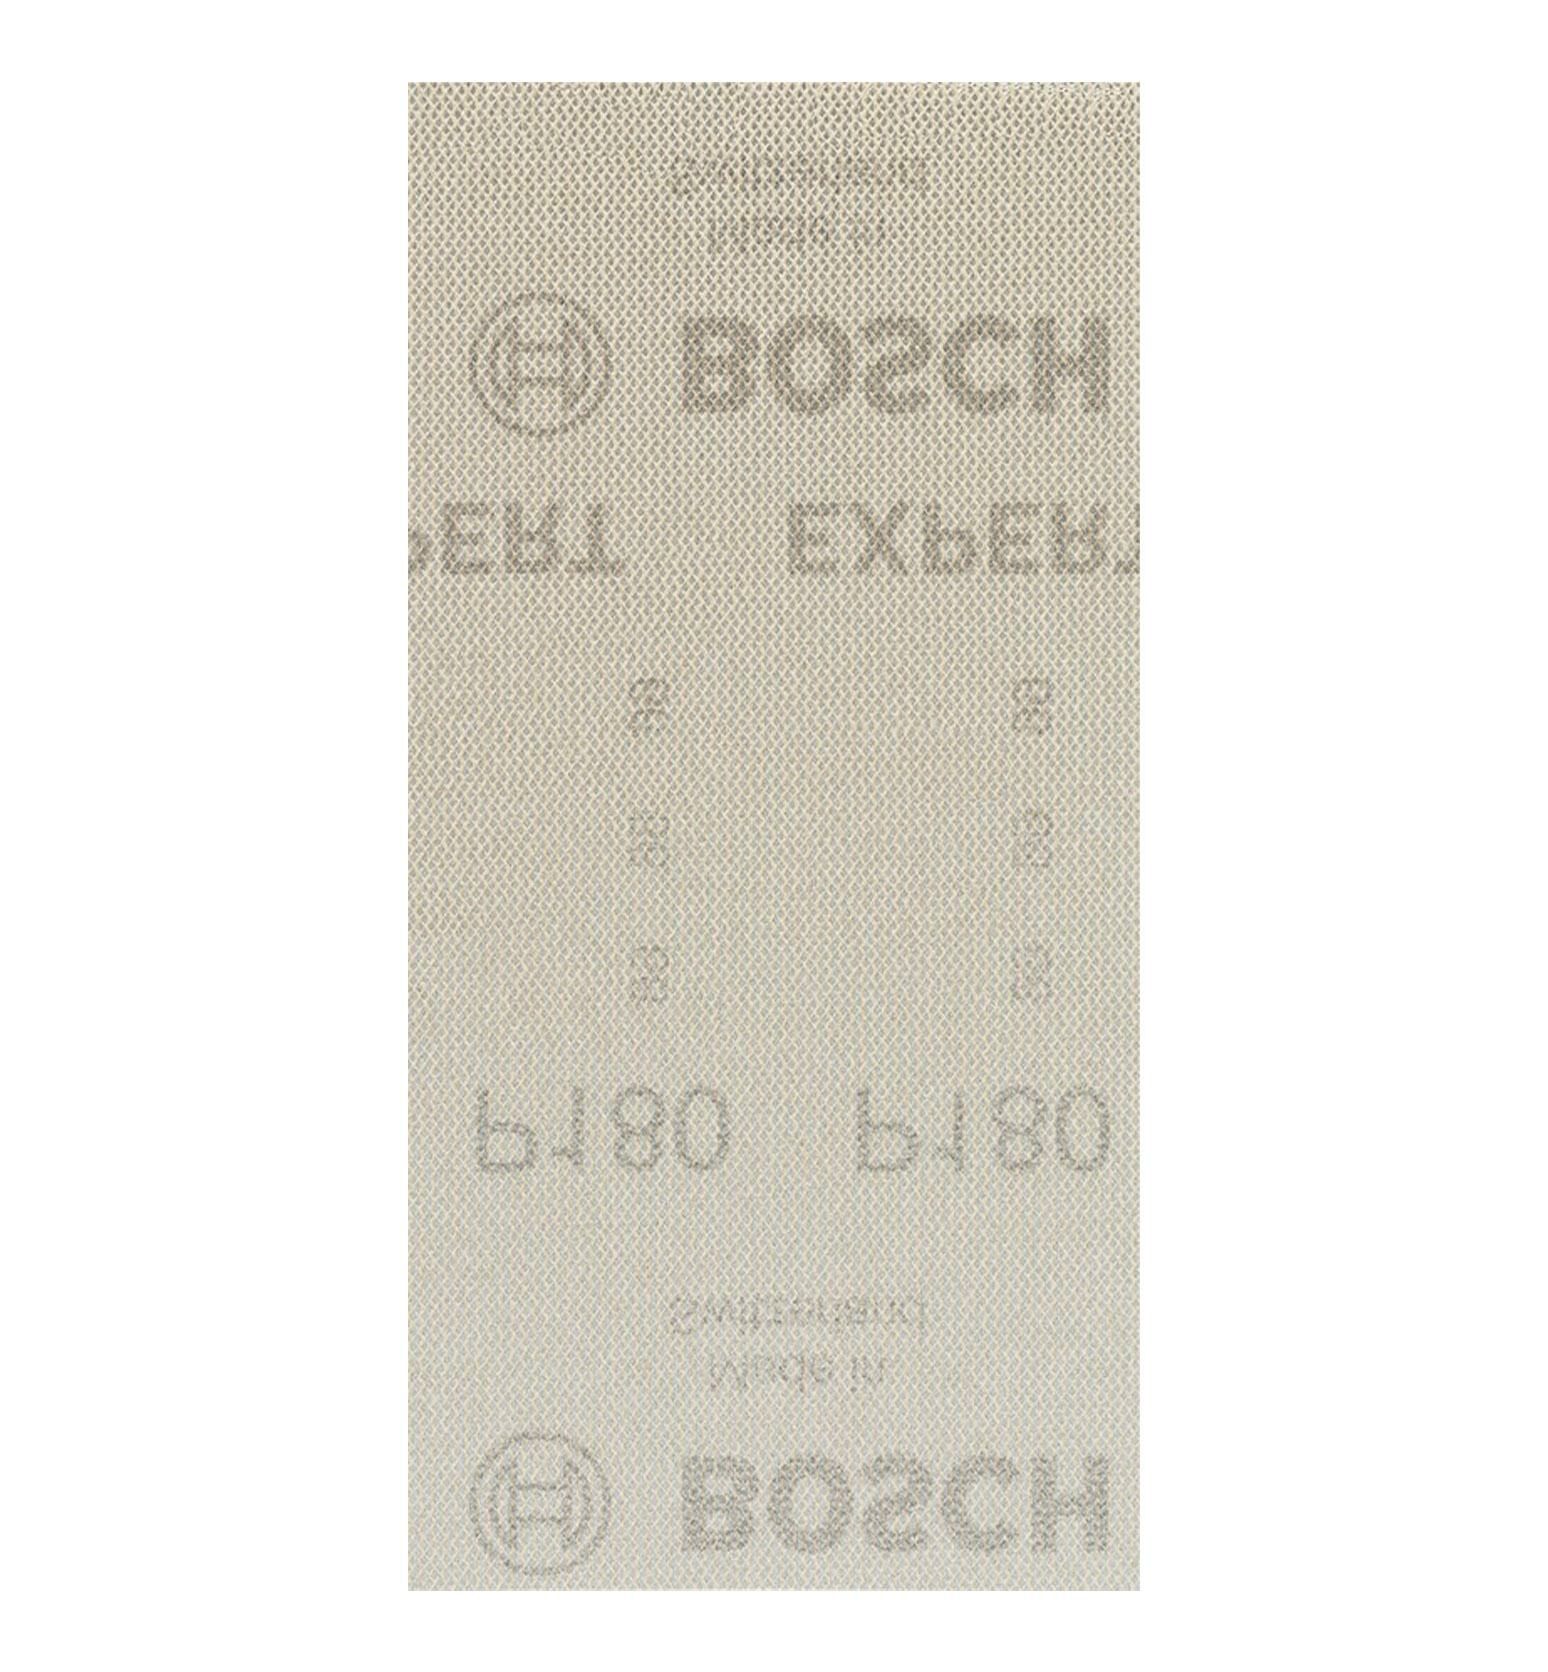 Bosch M480 93x186 mm 180 kum Elek Telli Ağ Zımpara 2608900756